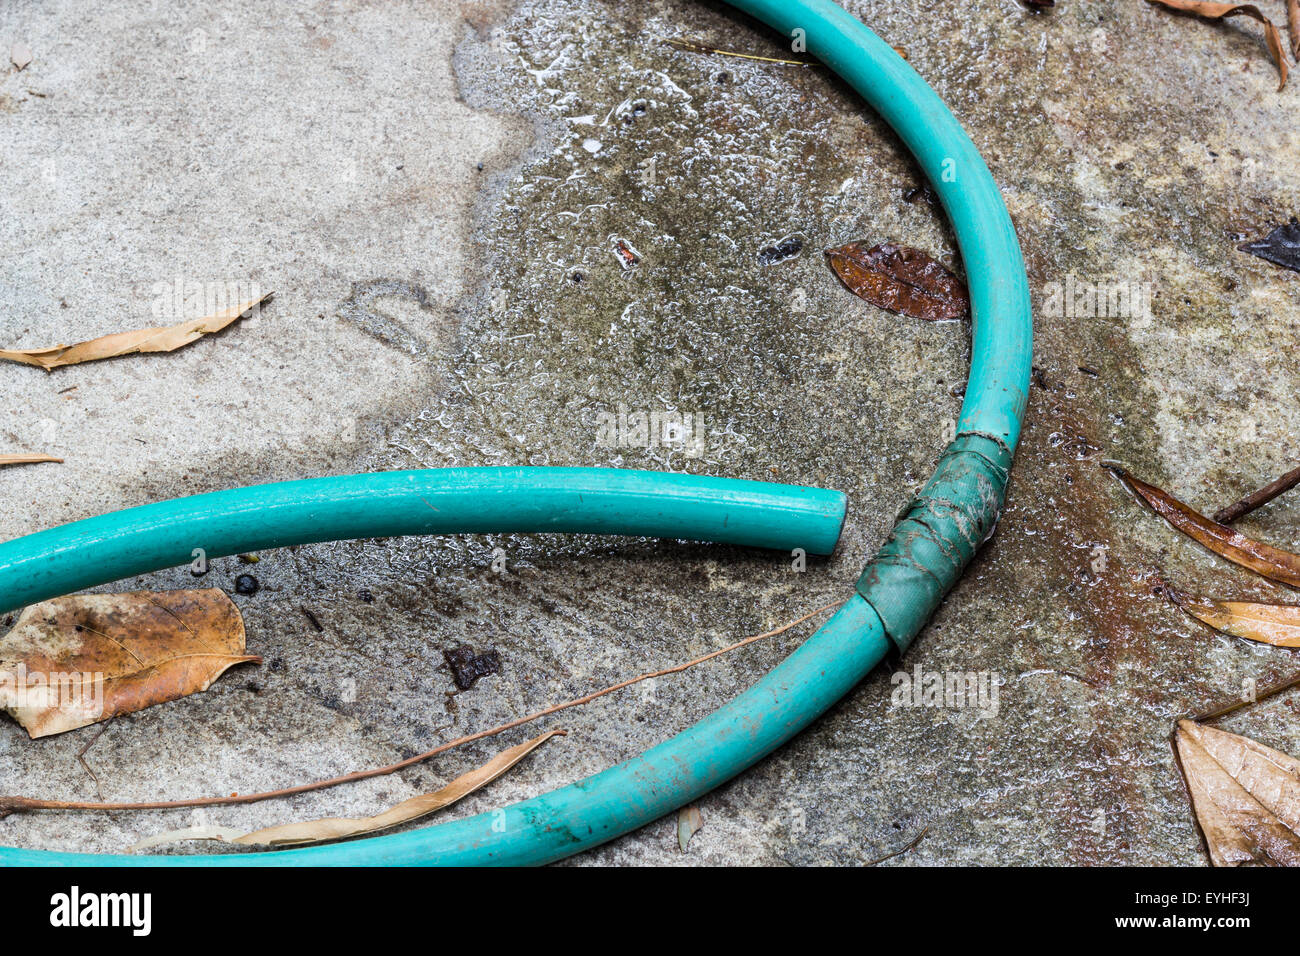 Grünes Wasserschlauch auf dem Zement-Boden undicht Stockfotografie - Alamy